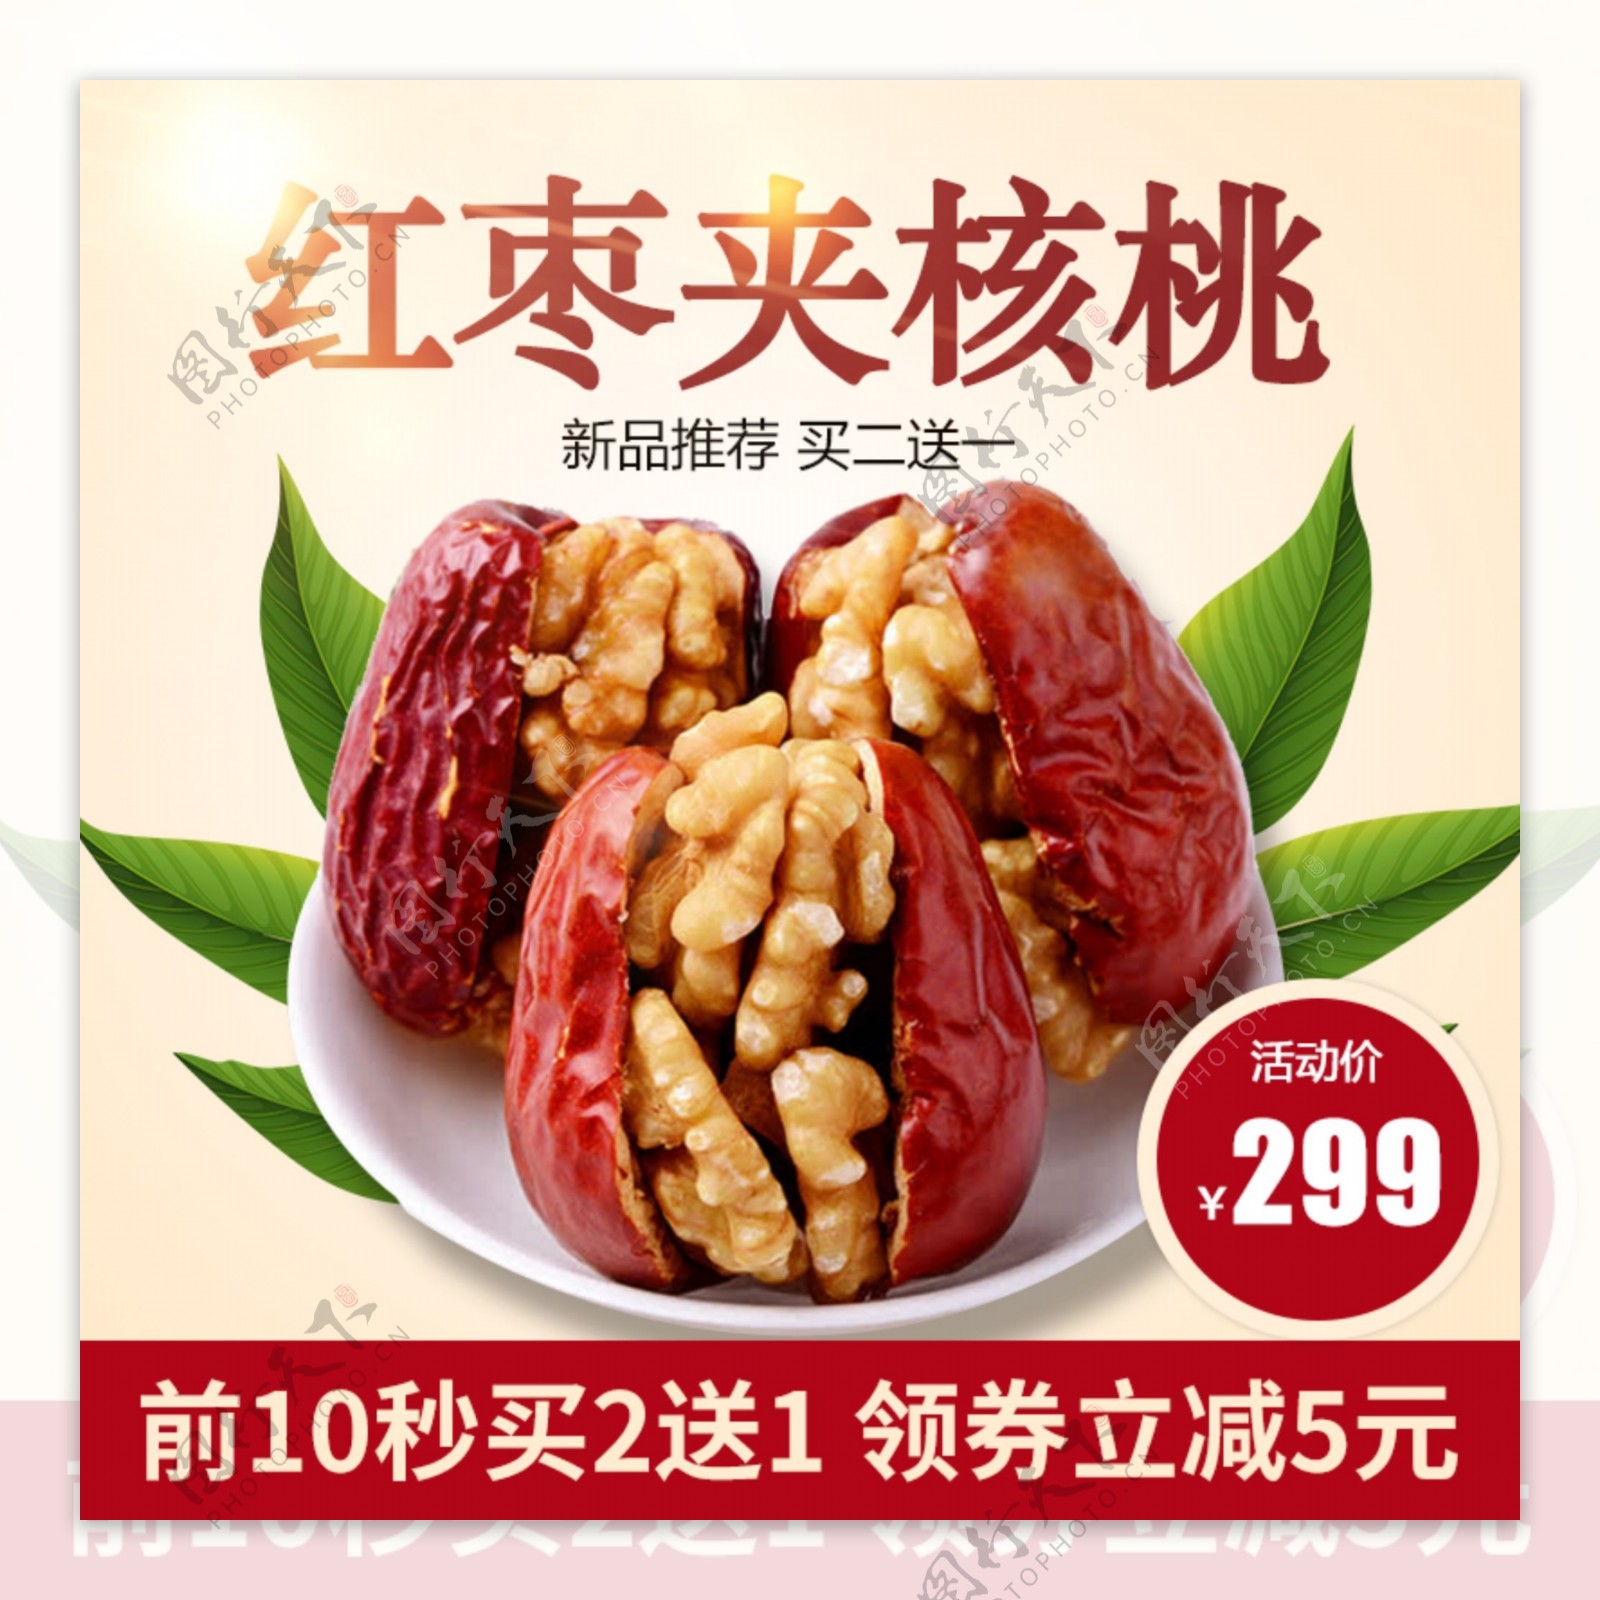 核桃红枣主图坚果健康营养包邮促销零食